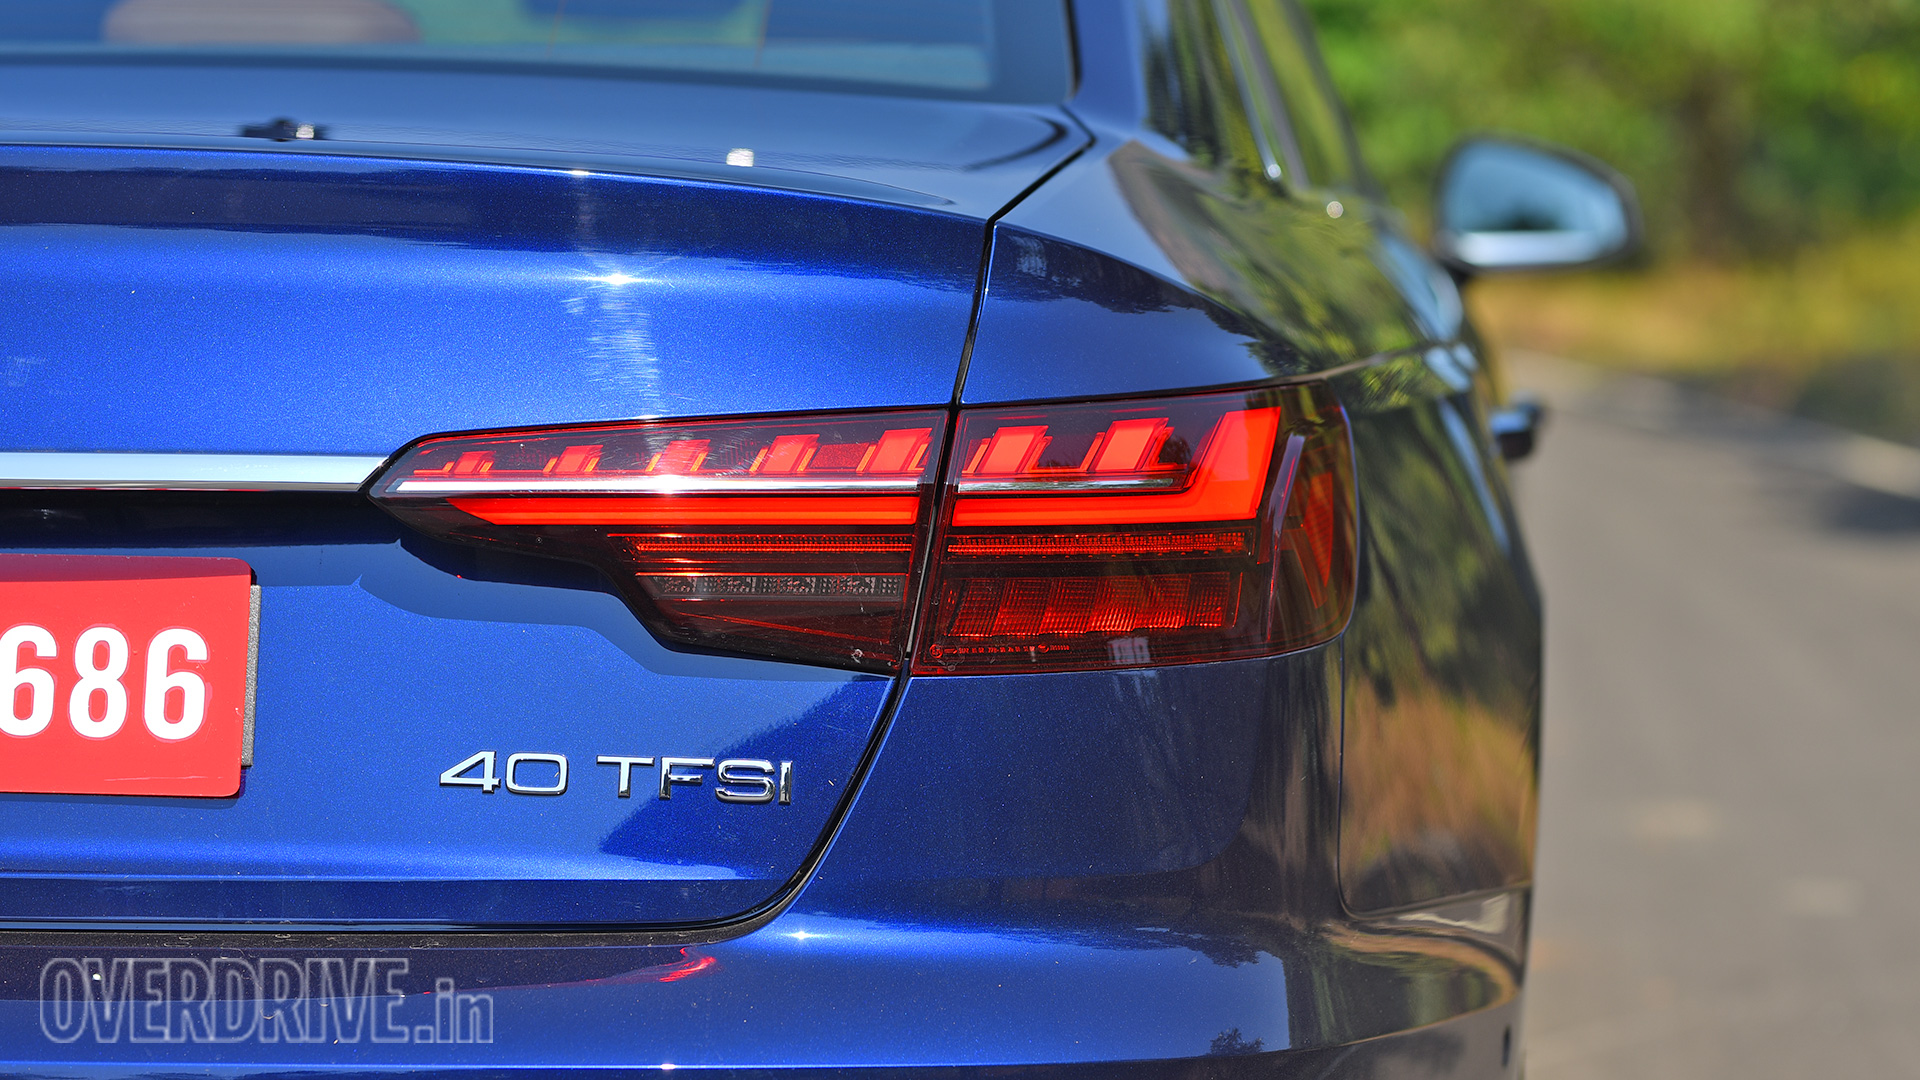 Audi A4 2021 40 TFSI Exterior